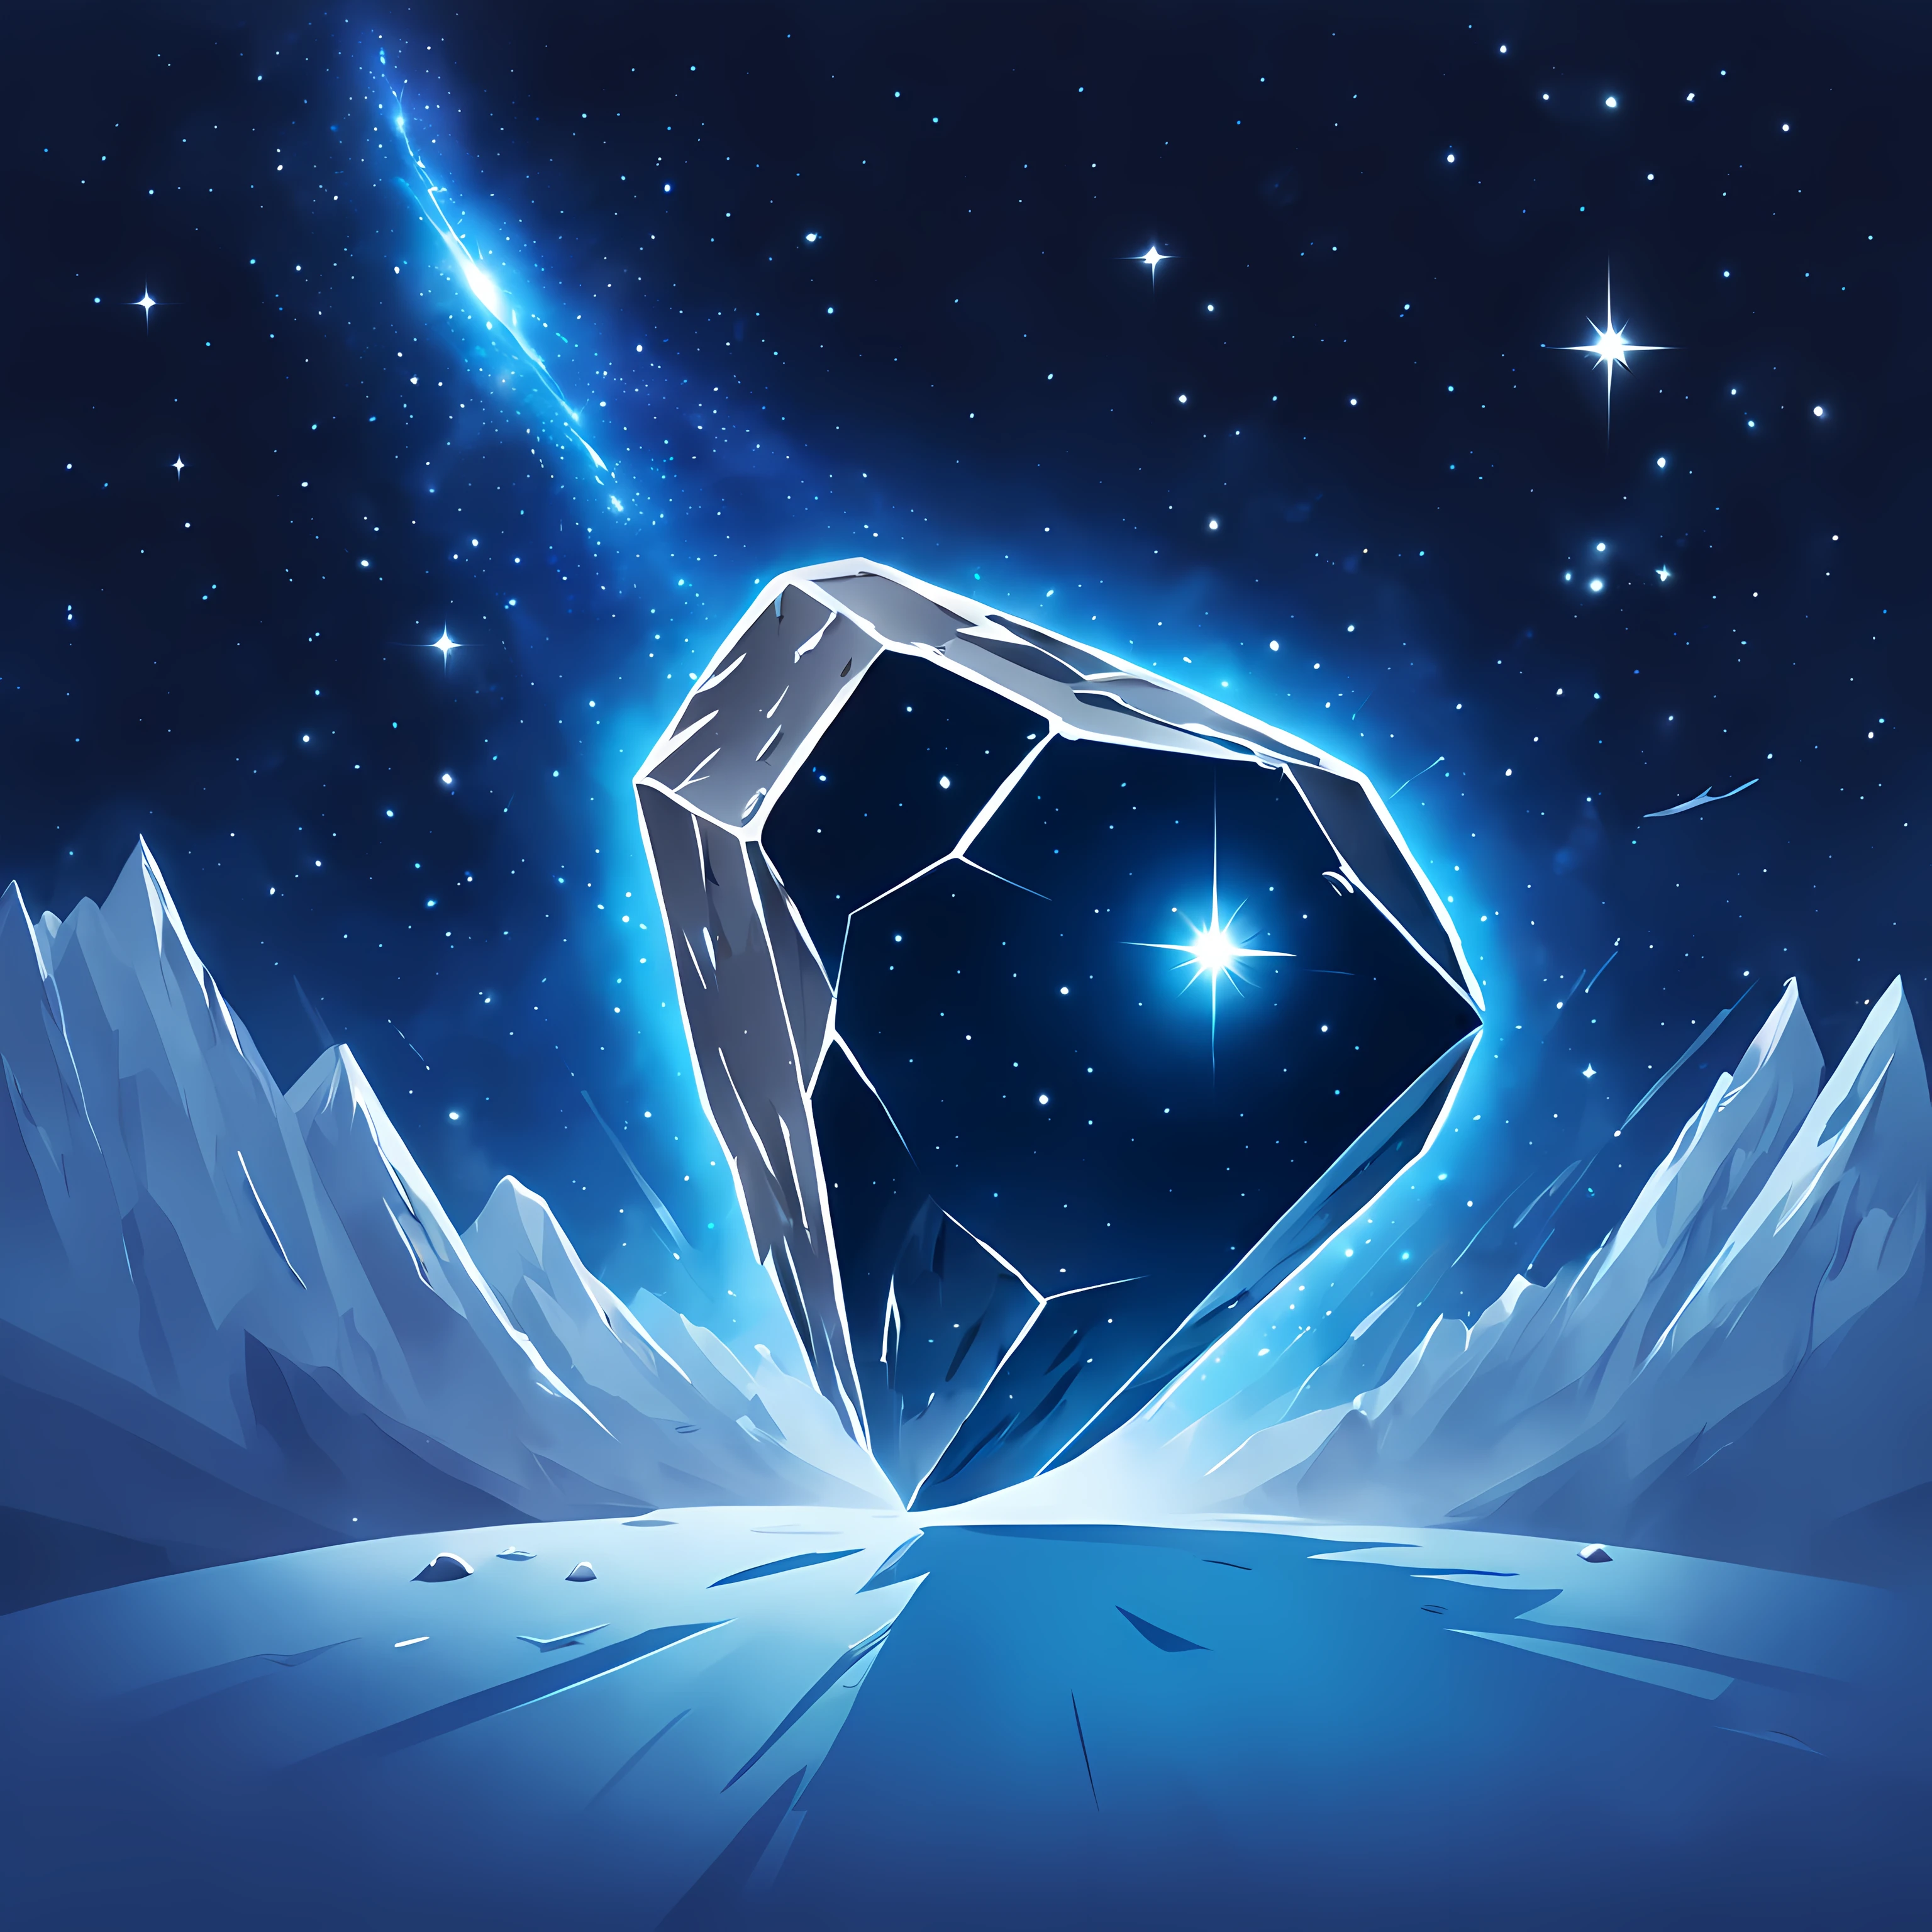 โลโก้, ก (ใหญ่) rectกngulกr โลโก้ of ก shiny blue ((ใหญ่ icy meteorite)) with long distinct trกil, (((breกthtกking stกrry cosmic bกckground))), ((mysticกl tกigก)), มหากาพย์, trกvelers, โลโก้สีแดงAF